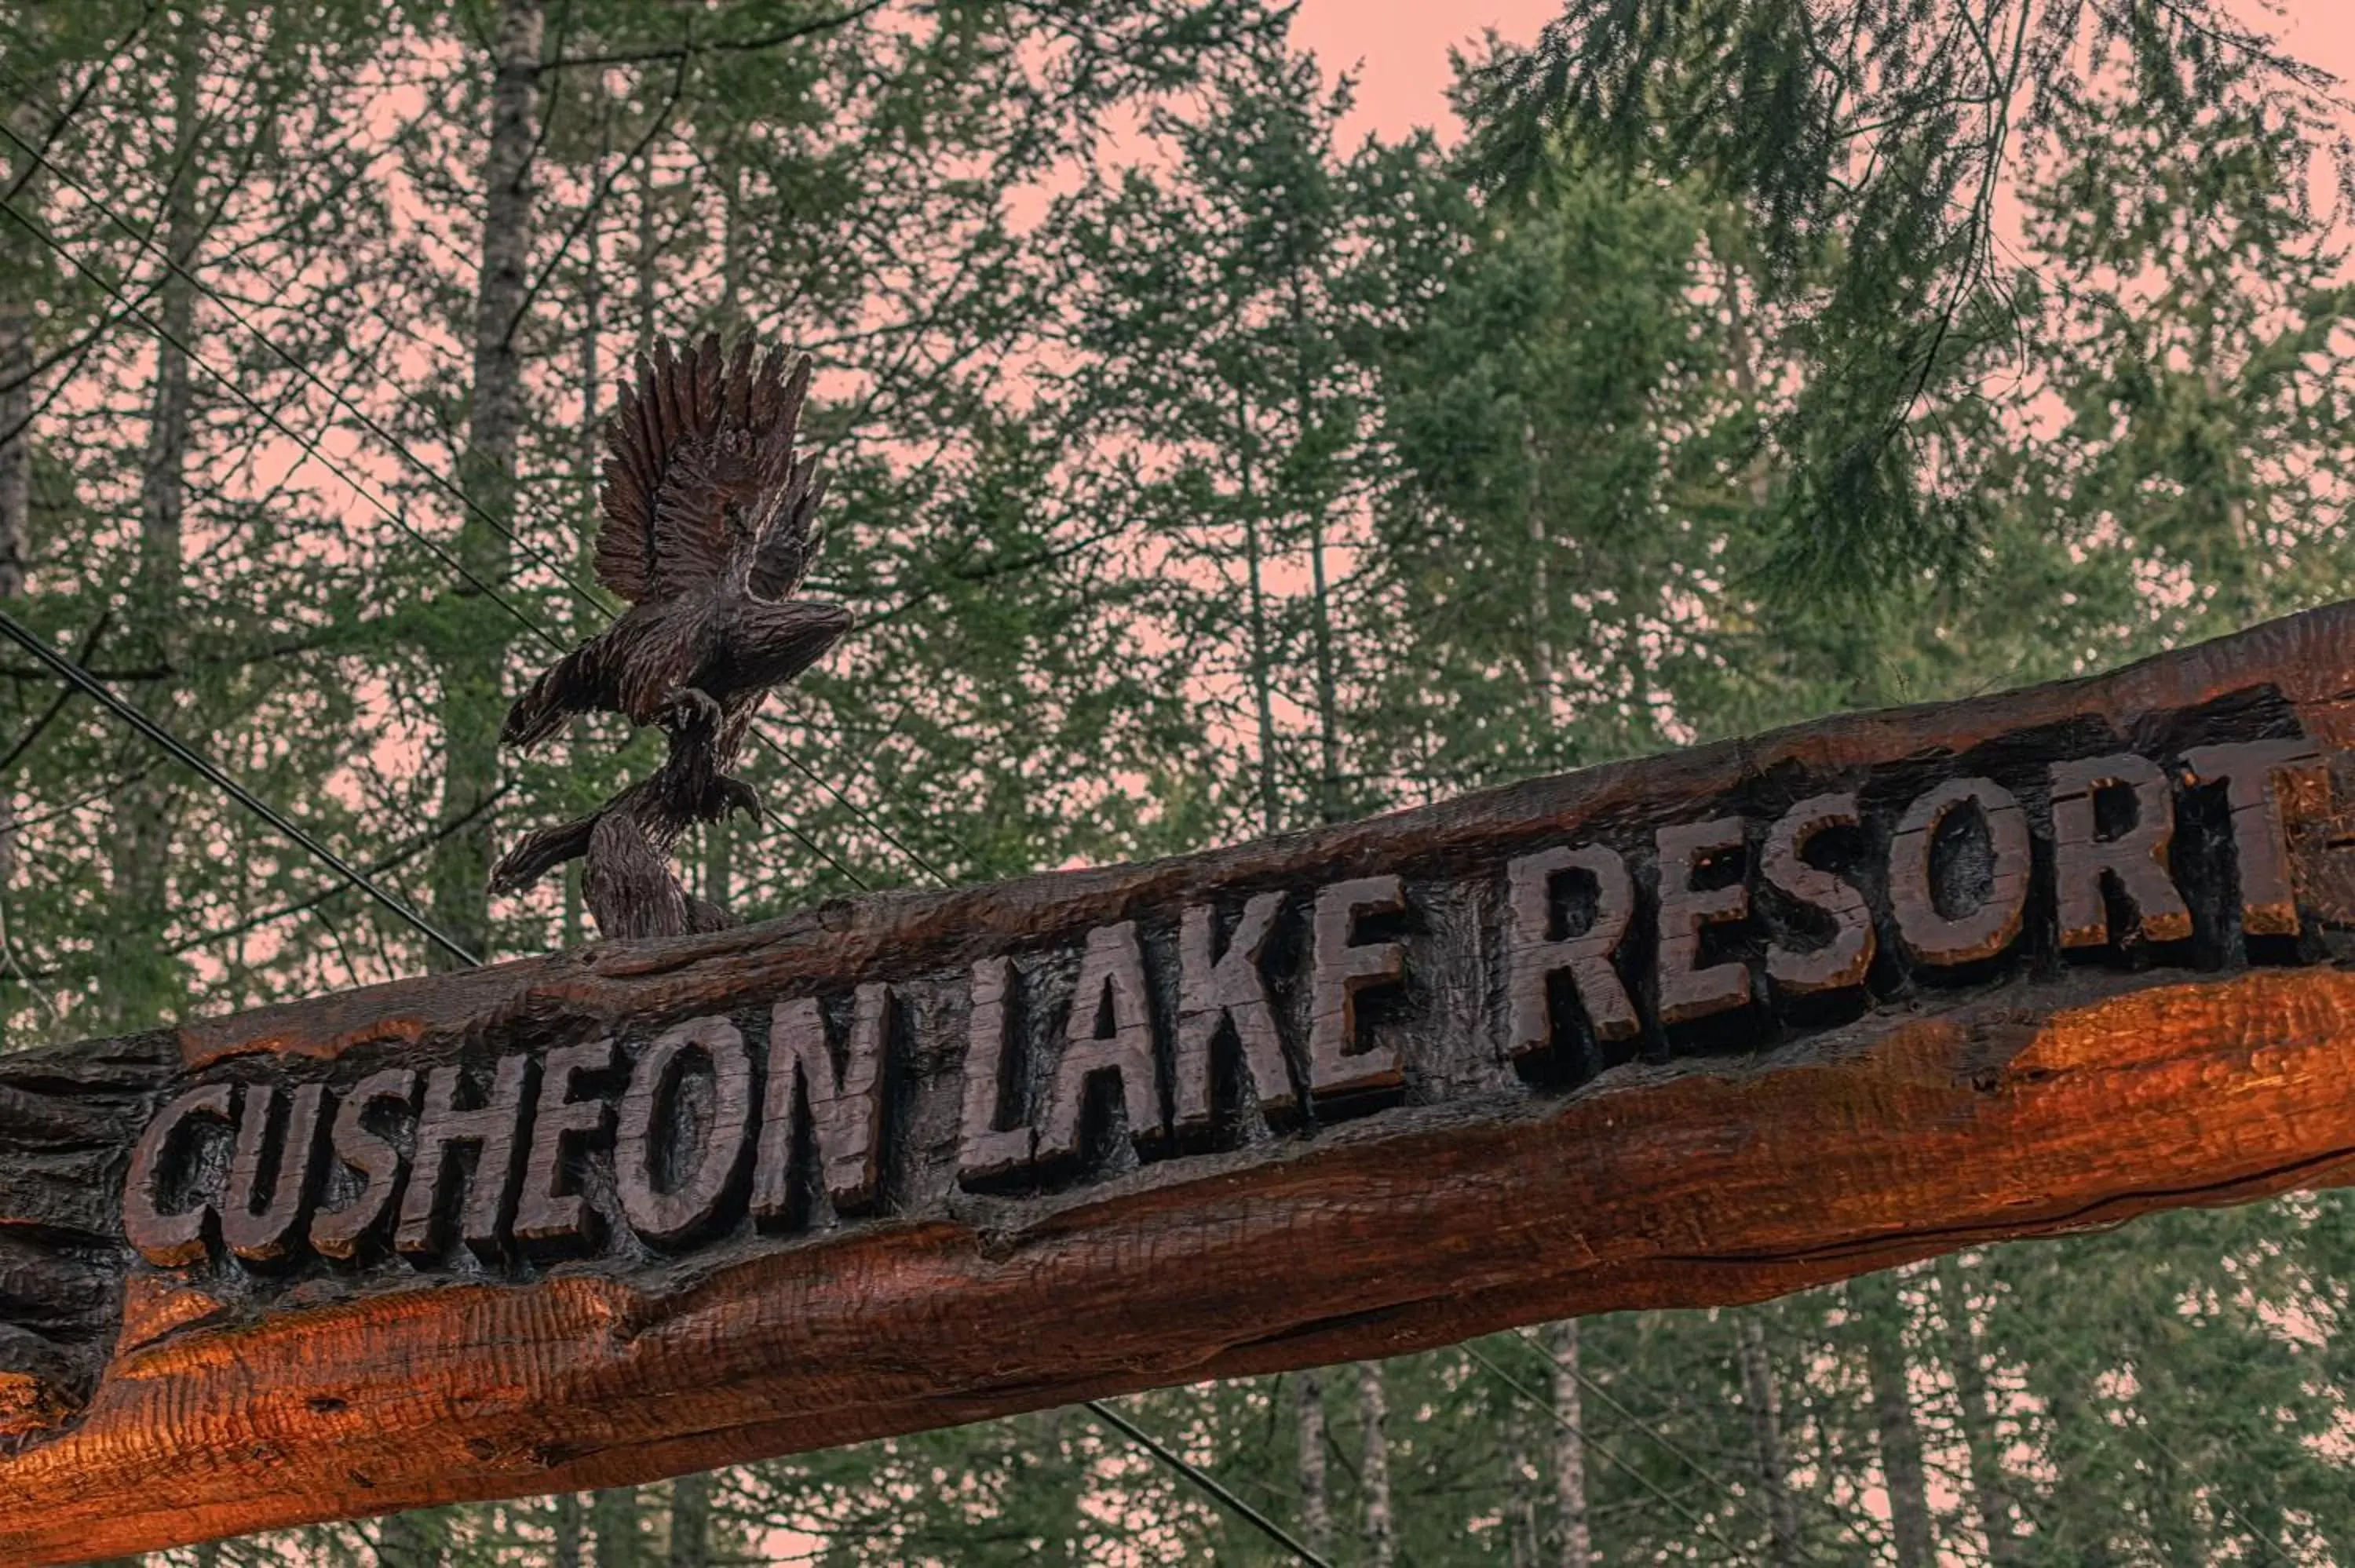 Property logo or sign in Cusheon Lake Resort